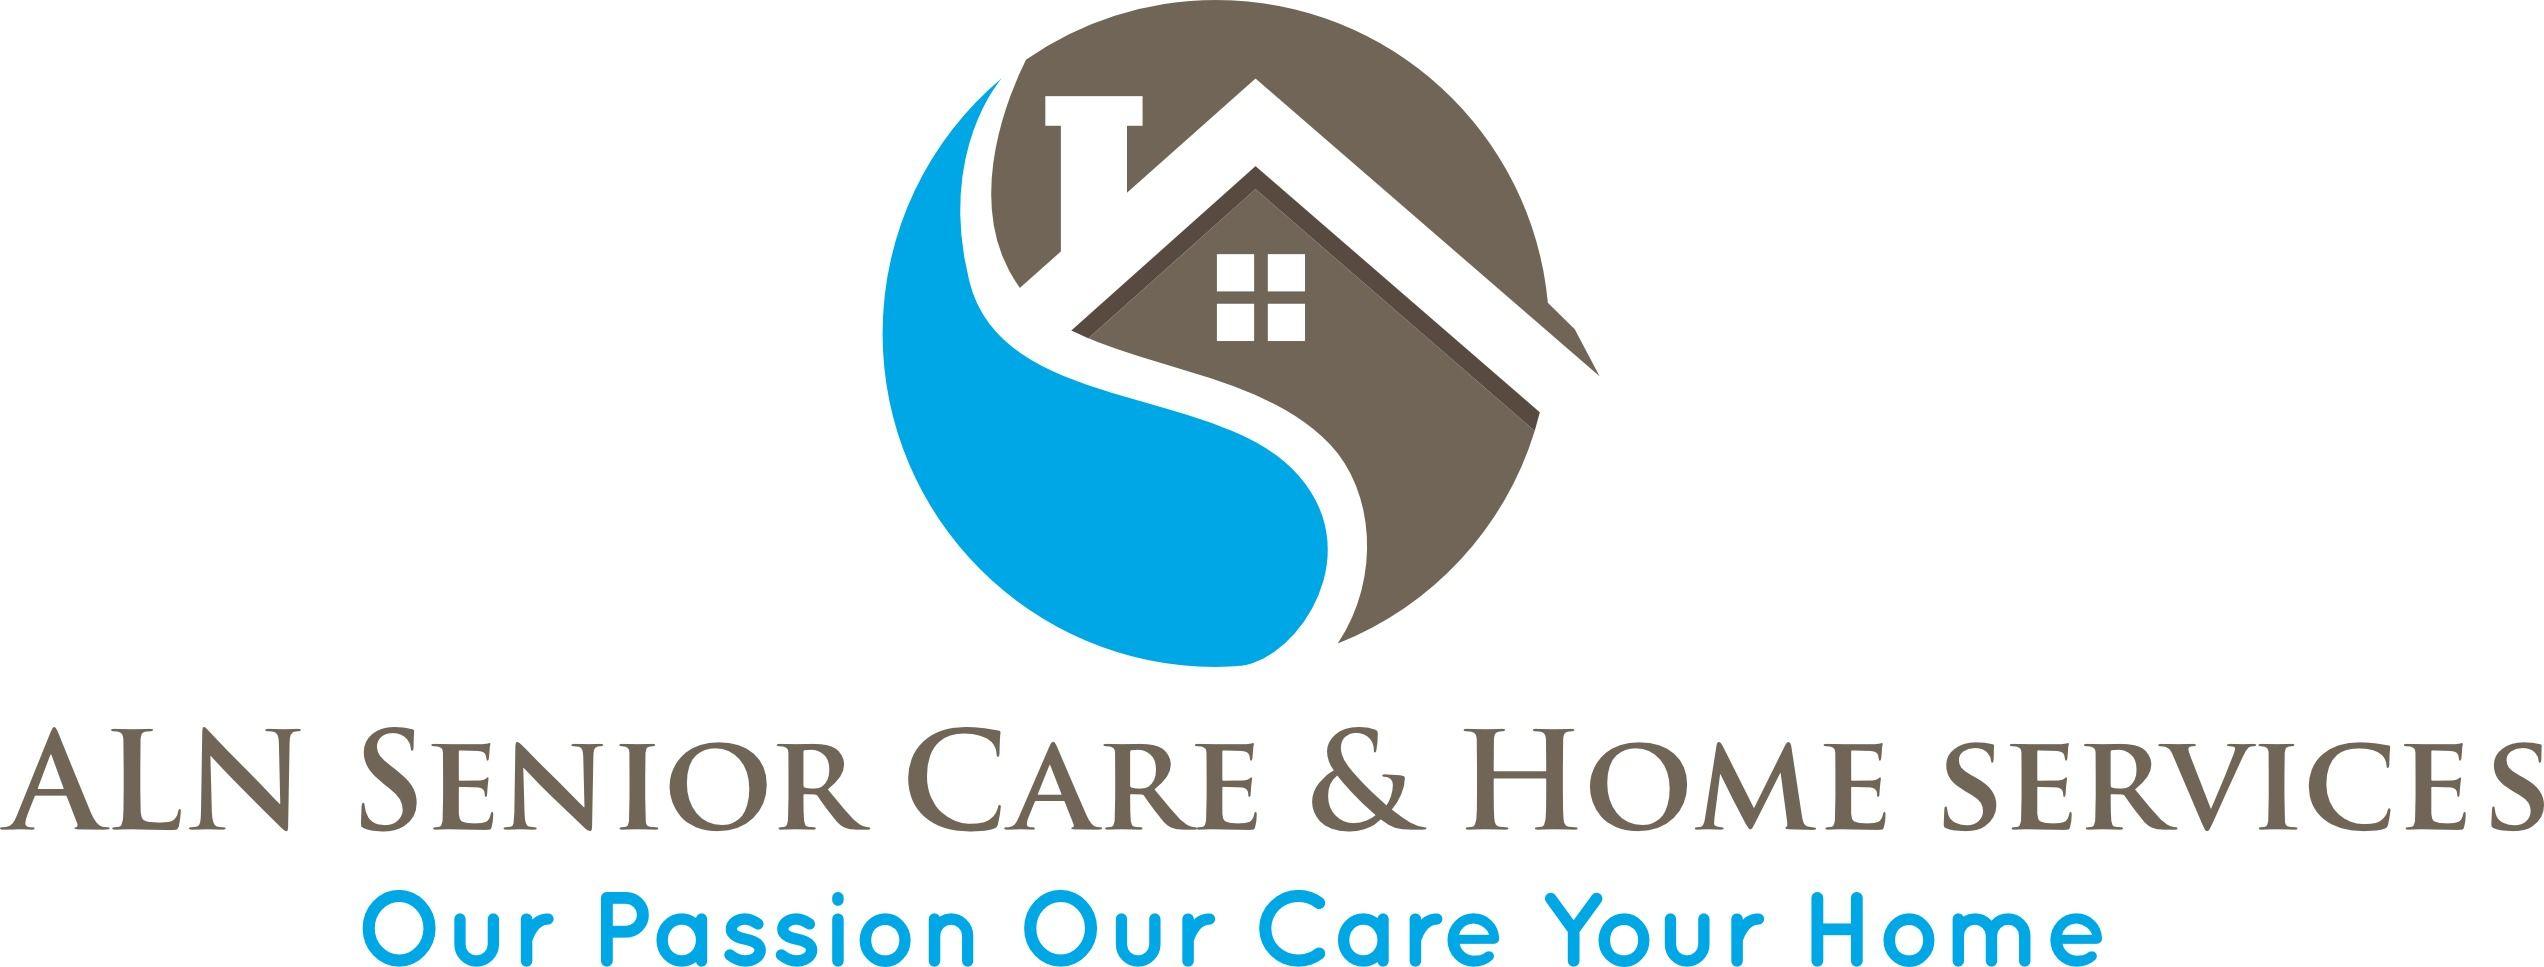 Senior Care Logo - Home healthcare troy, ohio Senior Care & Home Services